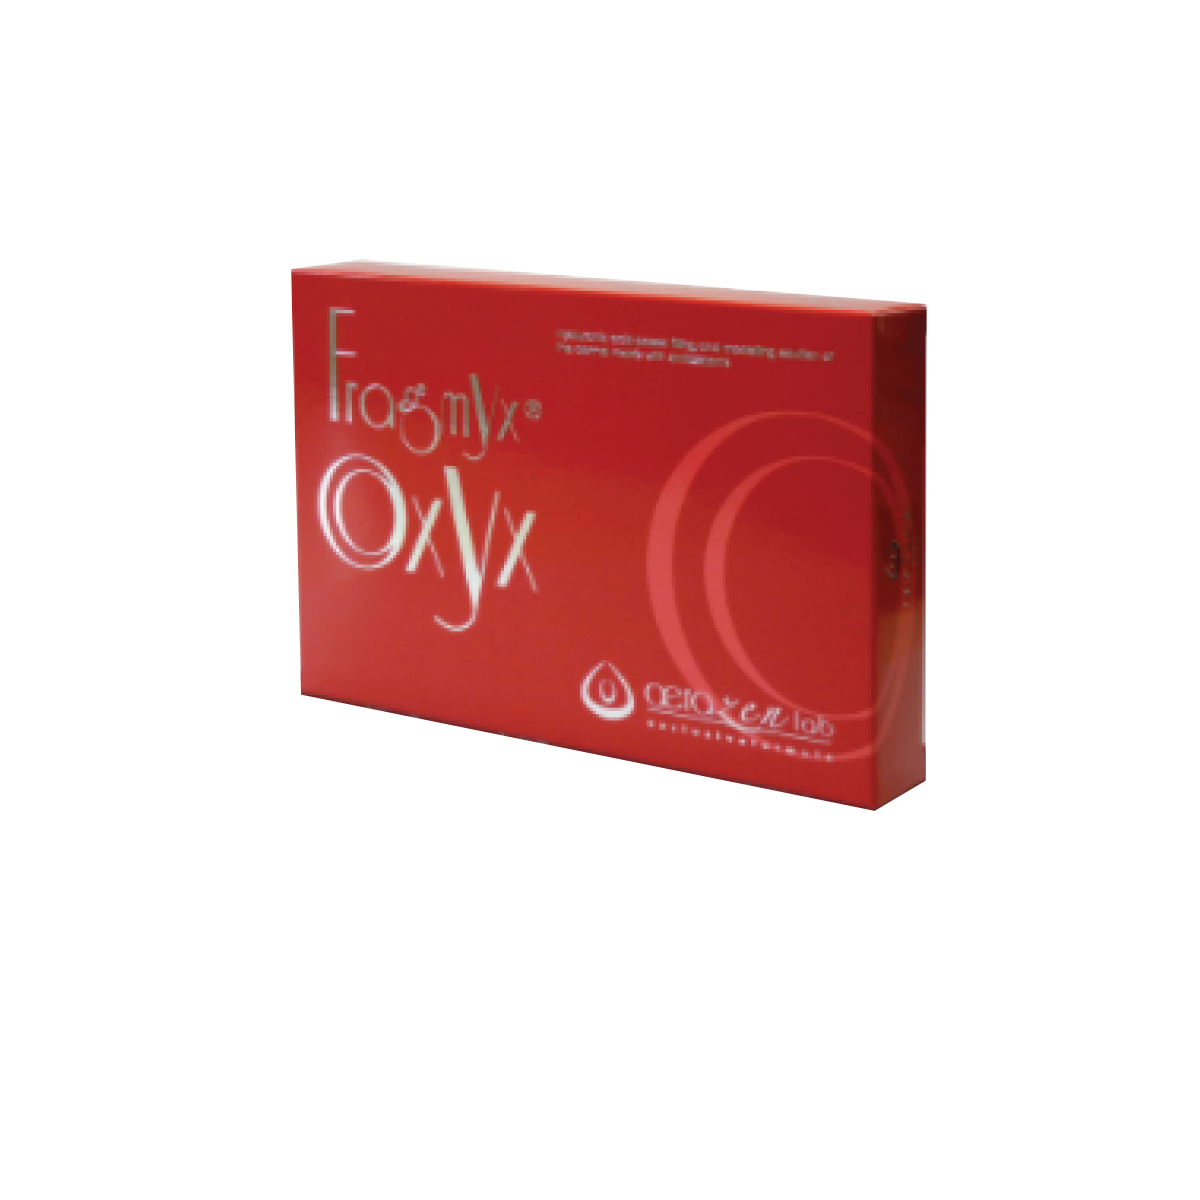 Fragmyx Oxyx – Huyết thanh làm sáng, tái tạo da & ngăn lão hóa